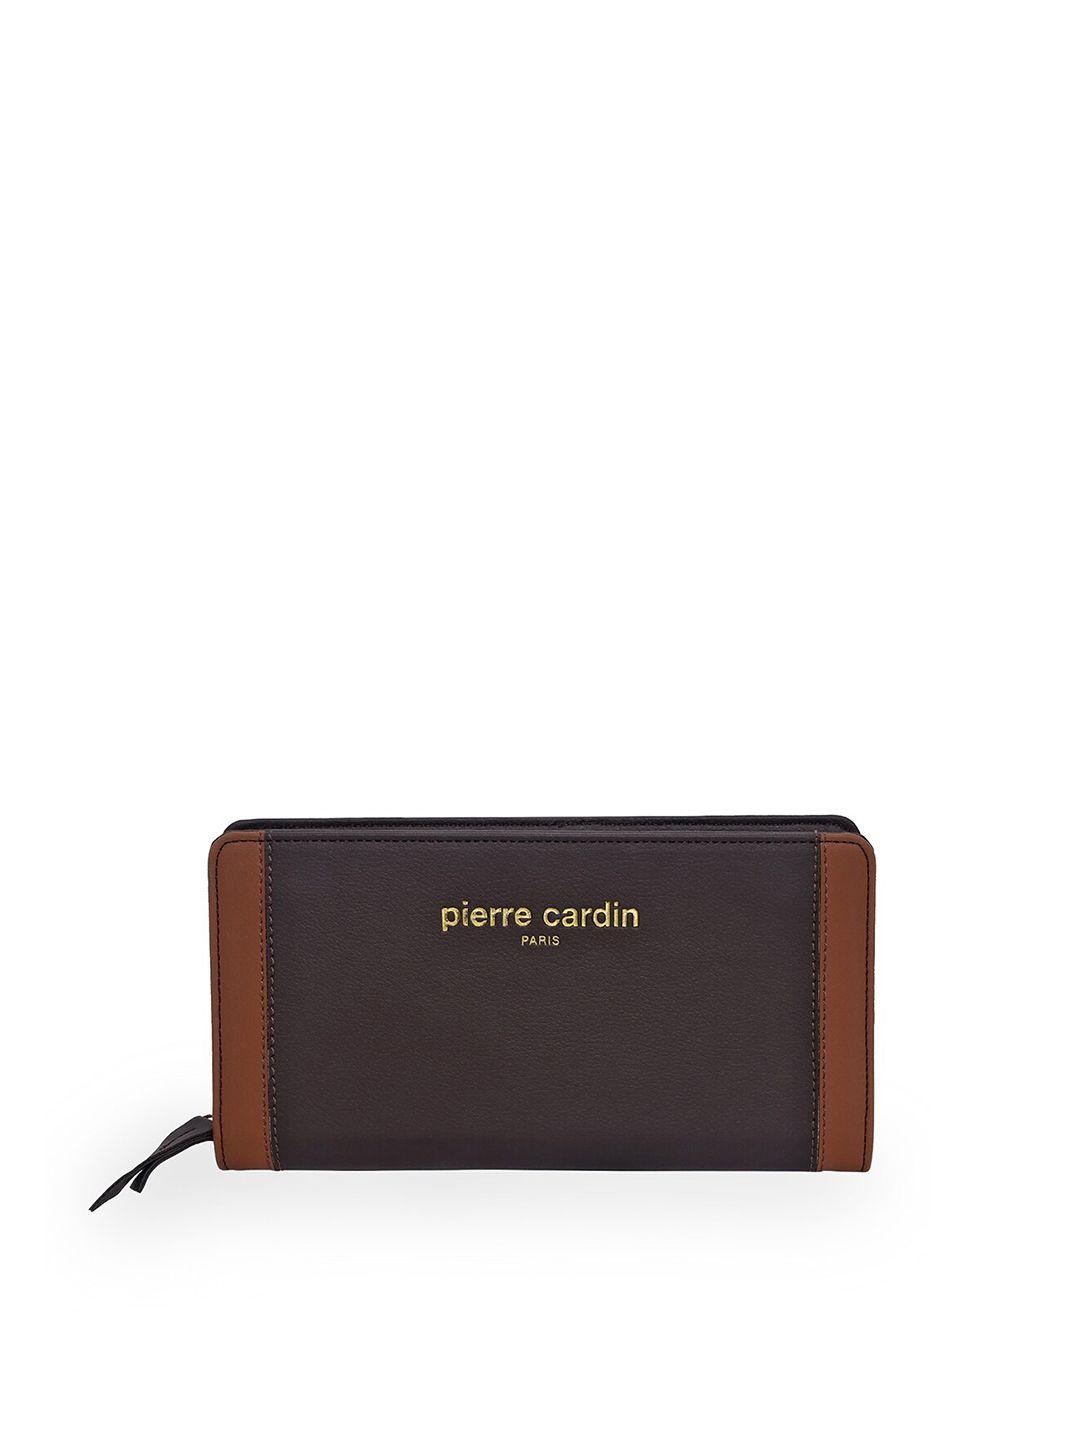 pierre cardin women brown & tan colourblocked purse clutch